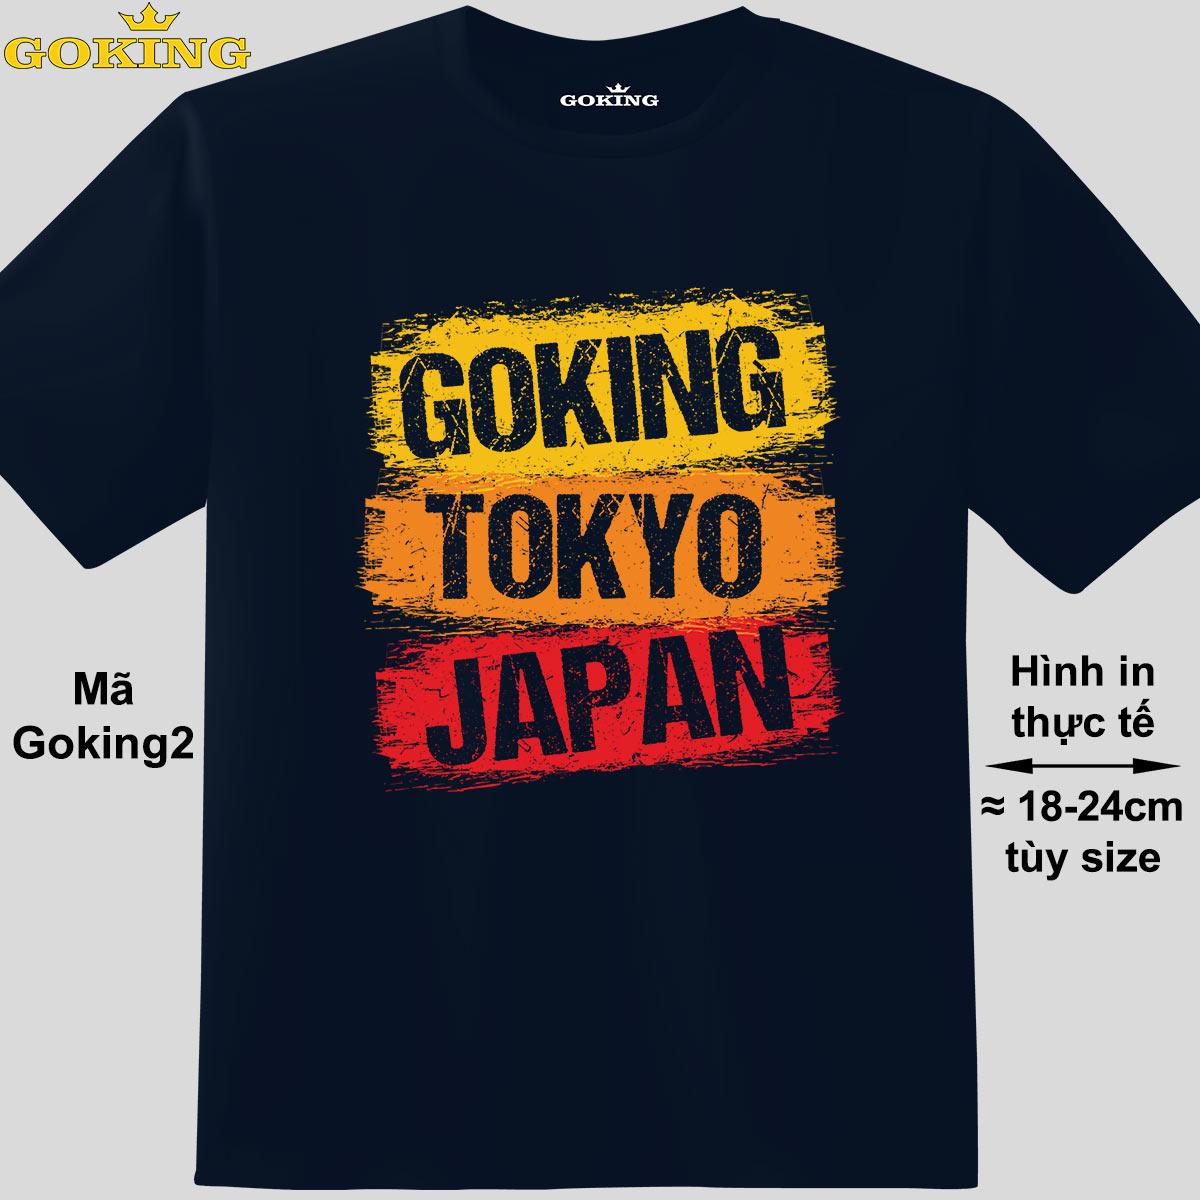 GOKING-TOKYO-JAPAN, mã Goking2. Áo thun siêu đẹp cho cả gia đình. Form unisex cho nam nữ, trẻ em, bé trai gái. Quà tặng ý nghĩa cho bố mẹ, con cái, bạn bè, doanh nghiệp, hội nhóm